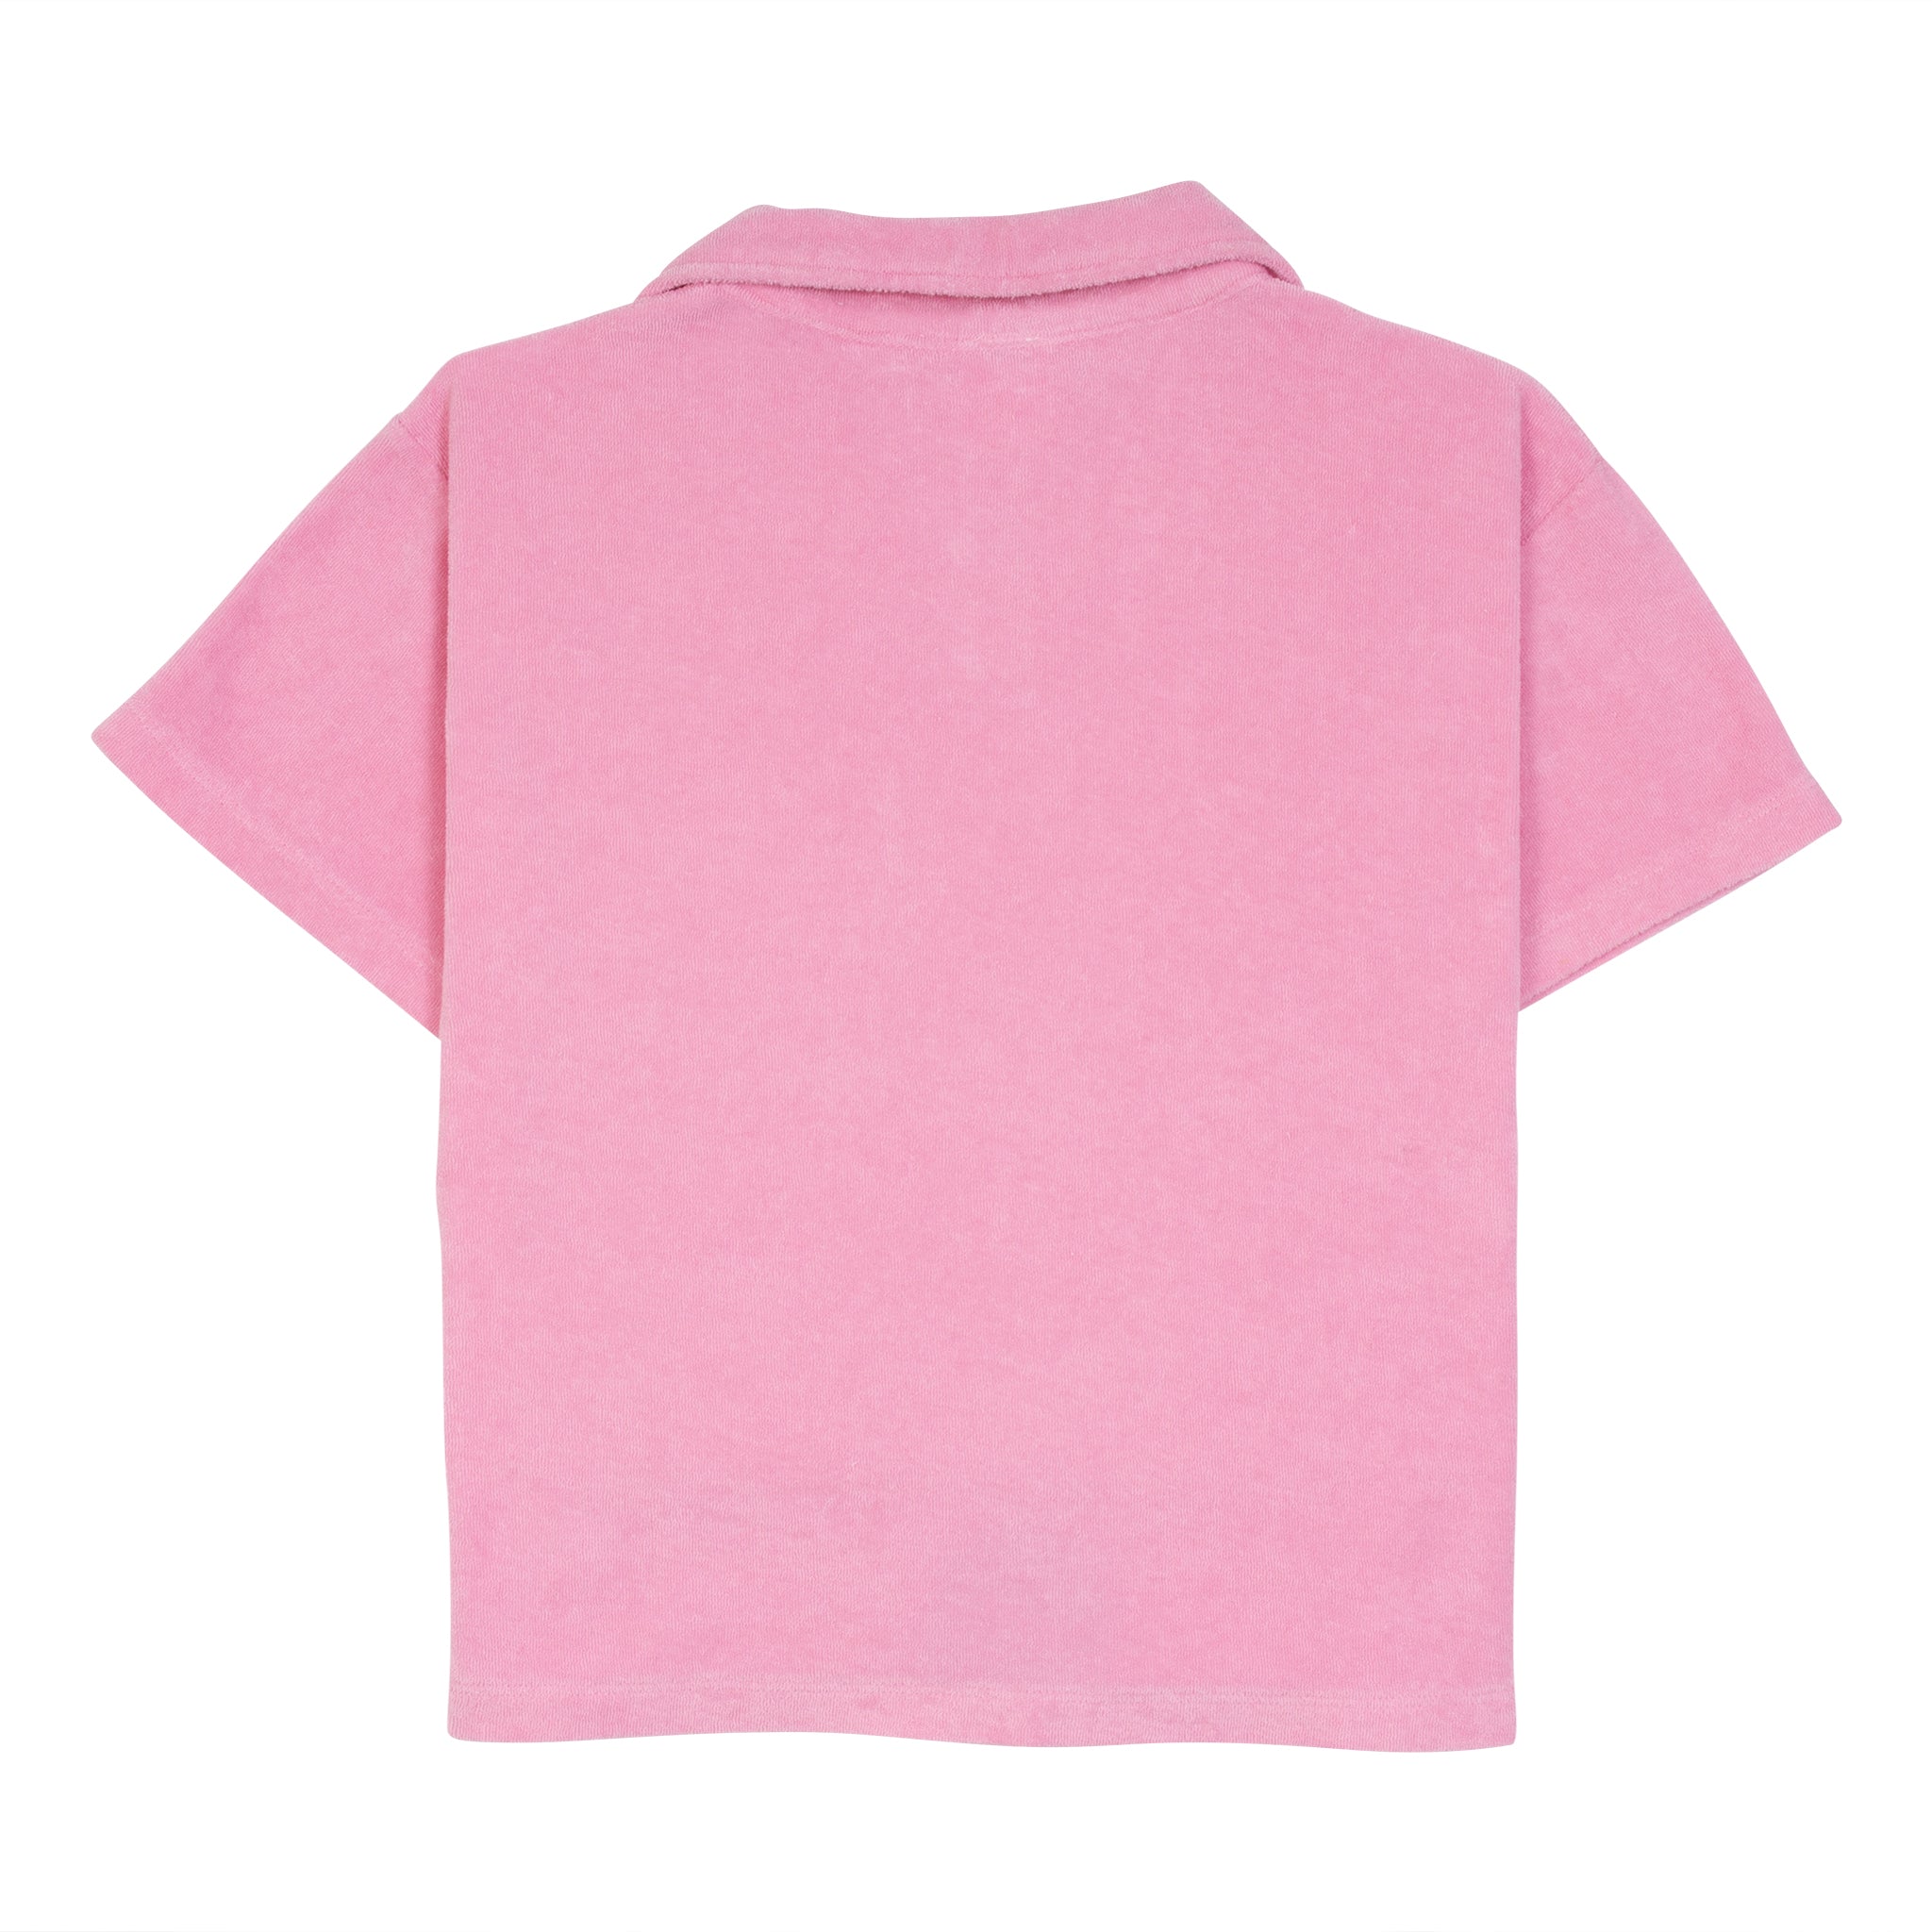 Pulpo Shirt - Pop Pink